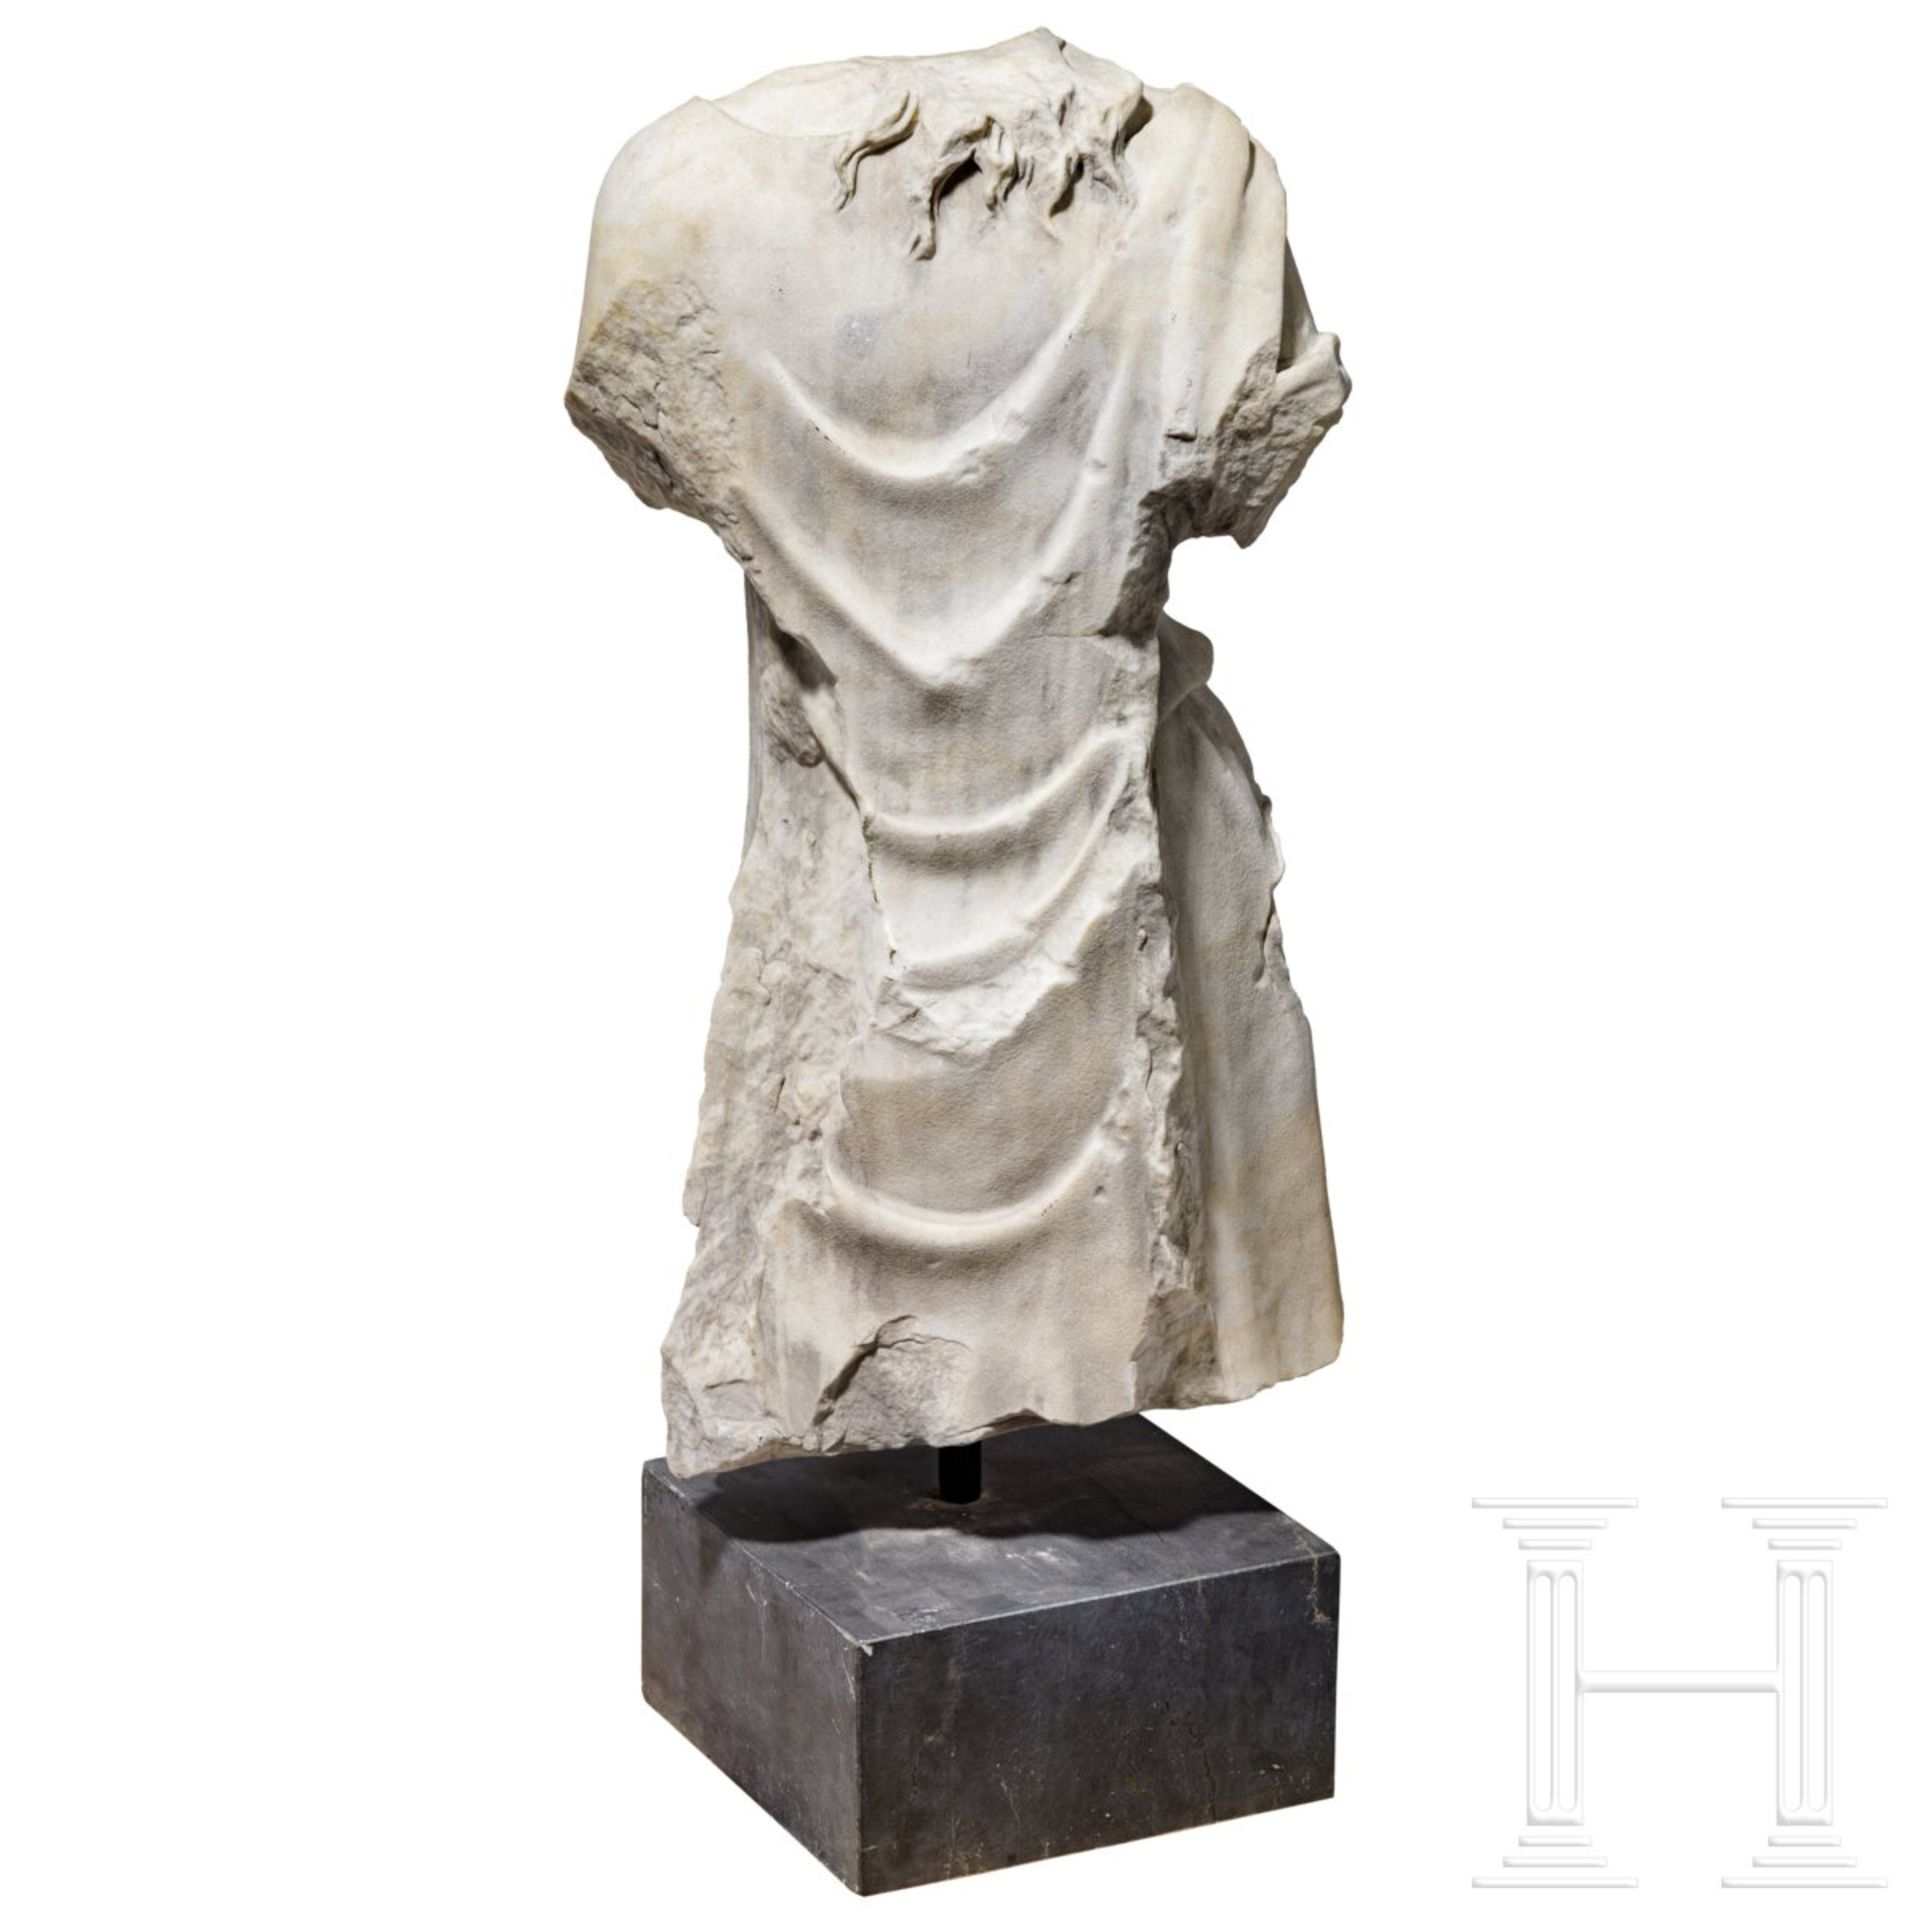 Klassizistischer Marmortorso nach dem Vorbild einer antiken Artemis-Statue, um 1800 - frühes 19. Jhd - Image 5 of 7